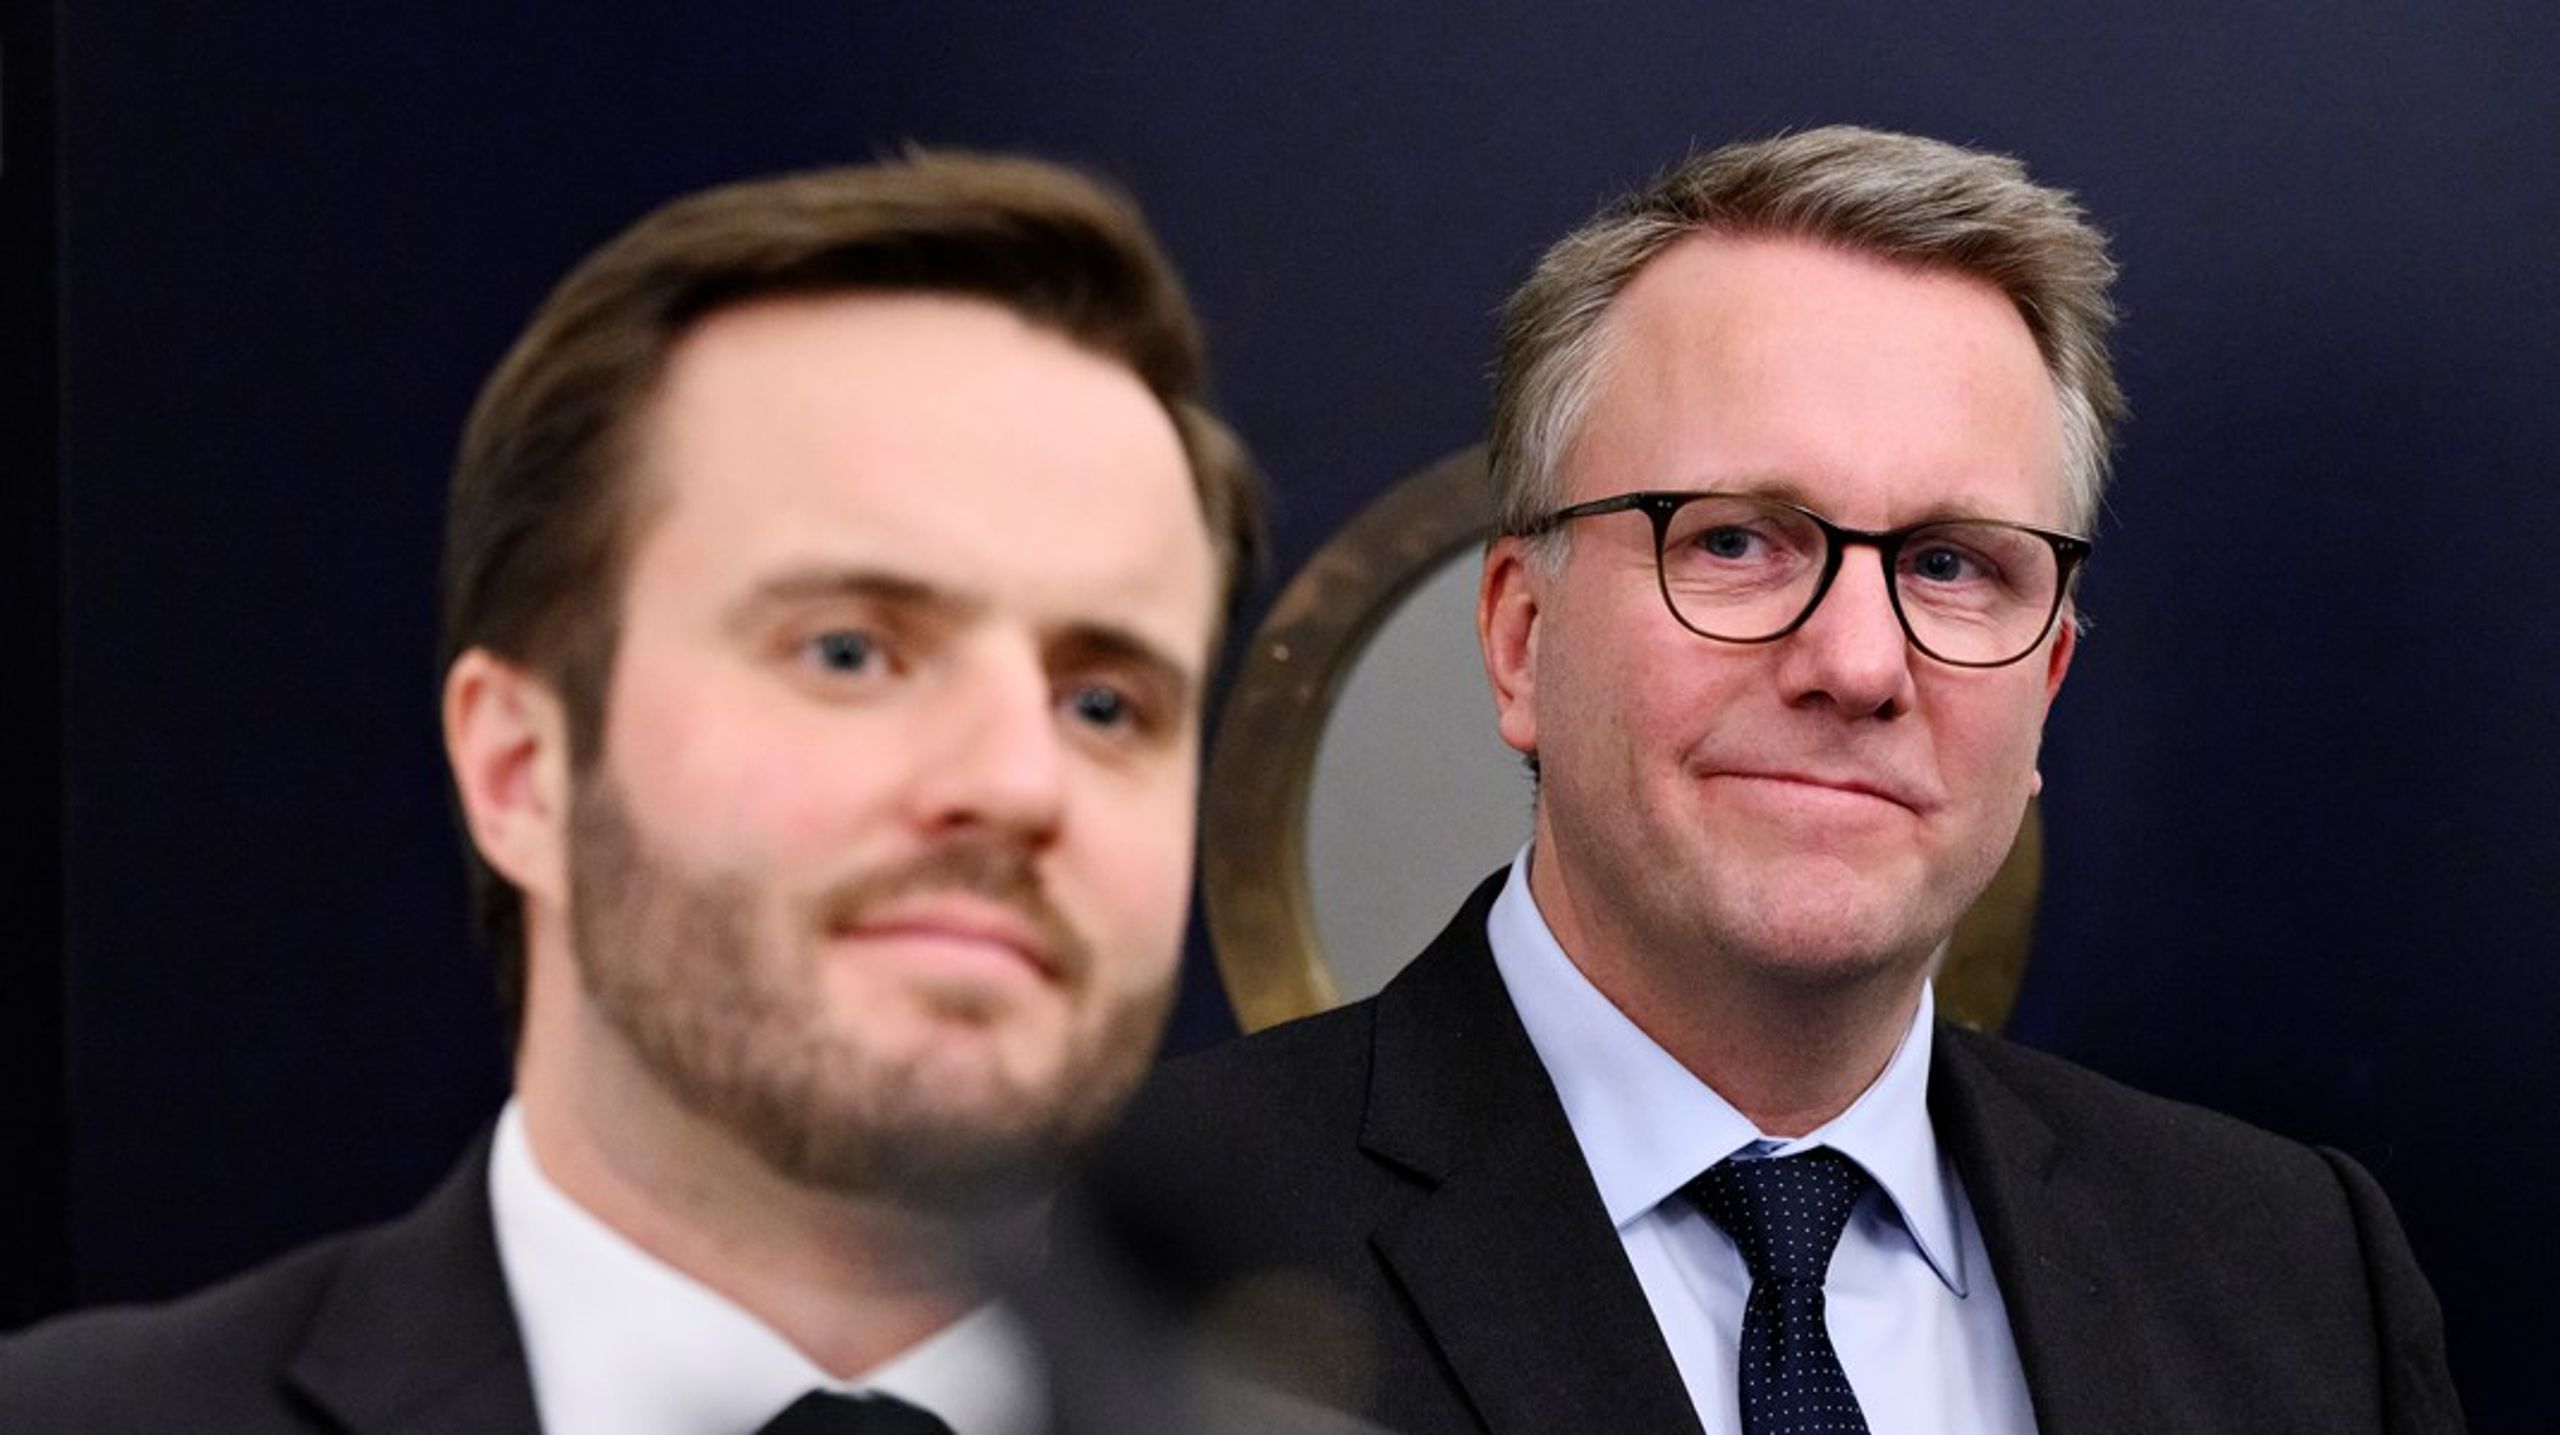 Erhvervsminister Simon Kollerup (S) og skatteminister Morten Bødskov (S) til doorstep i Finansministeriet om reformaftalen.